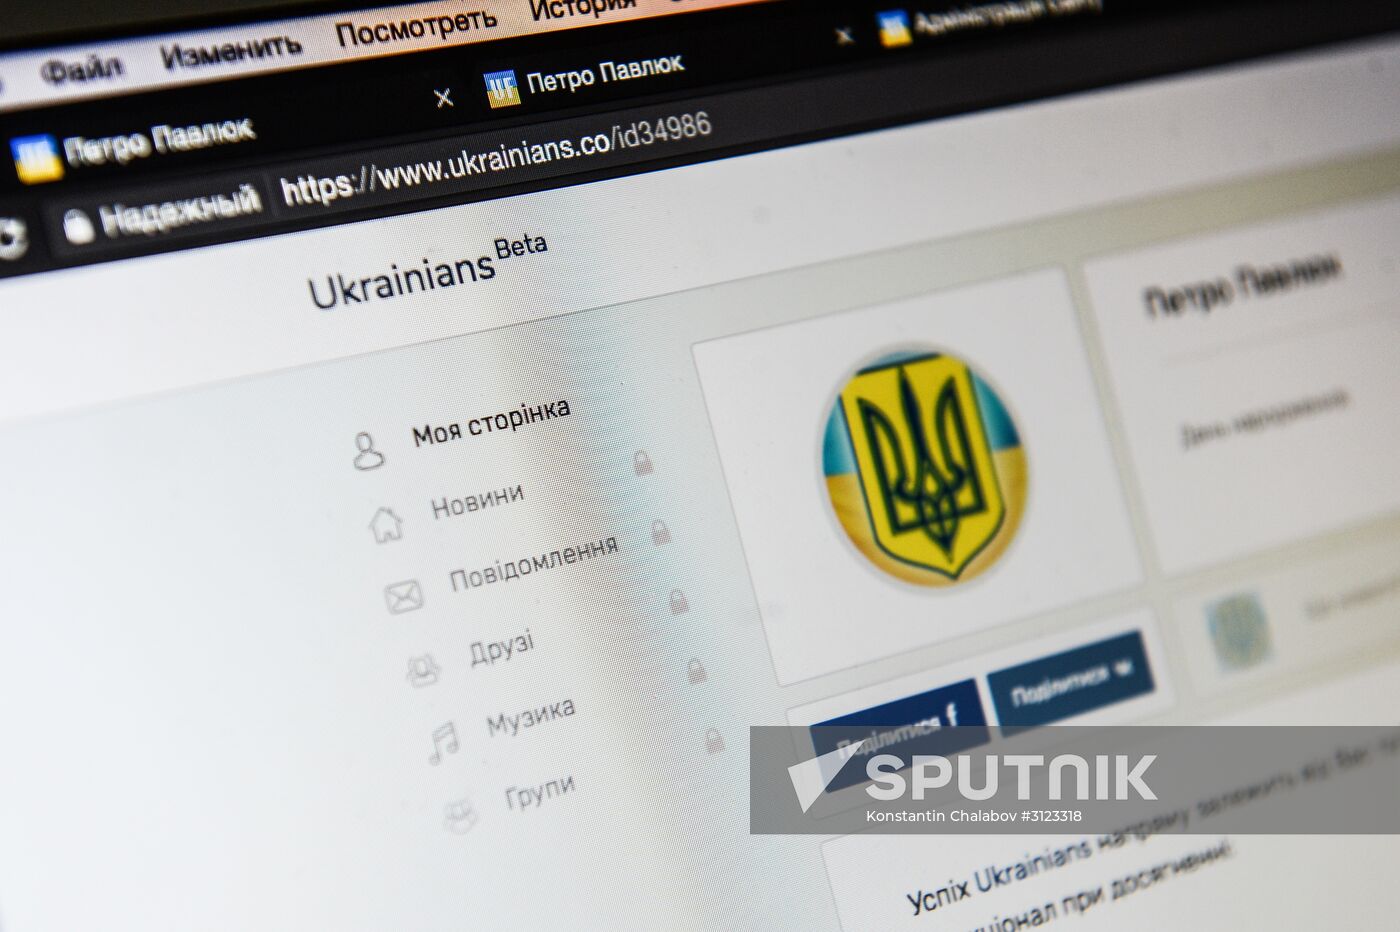 User registration open for Ukrainians social network